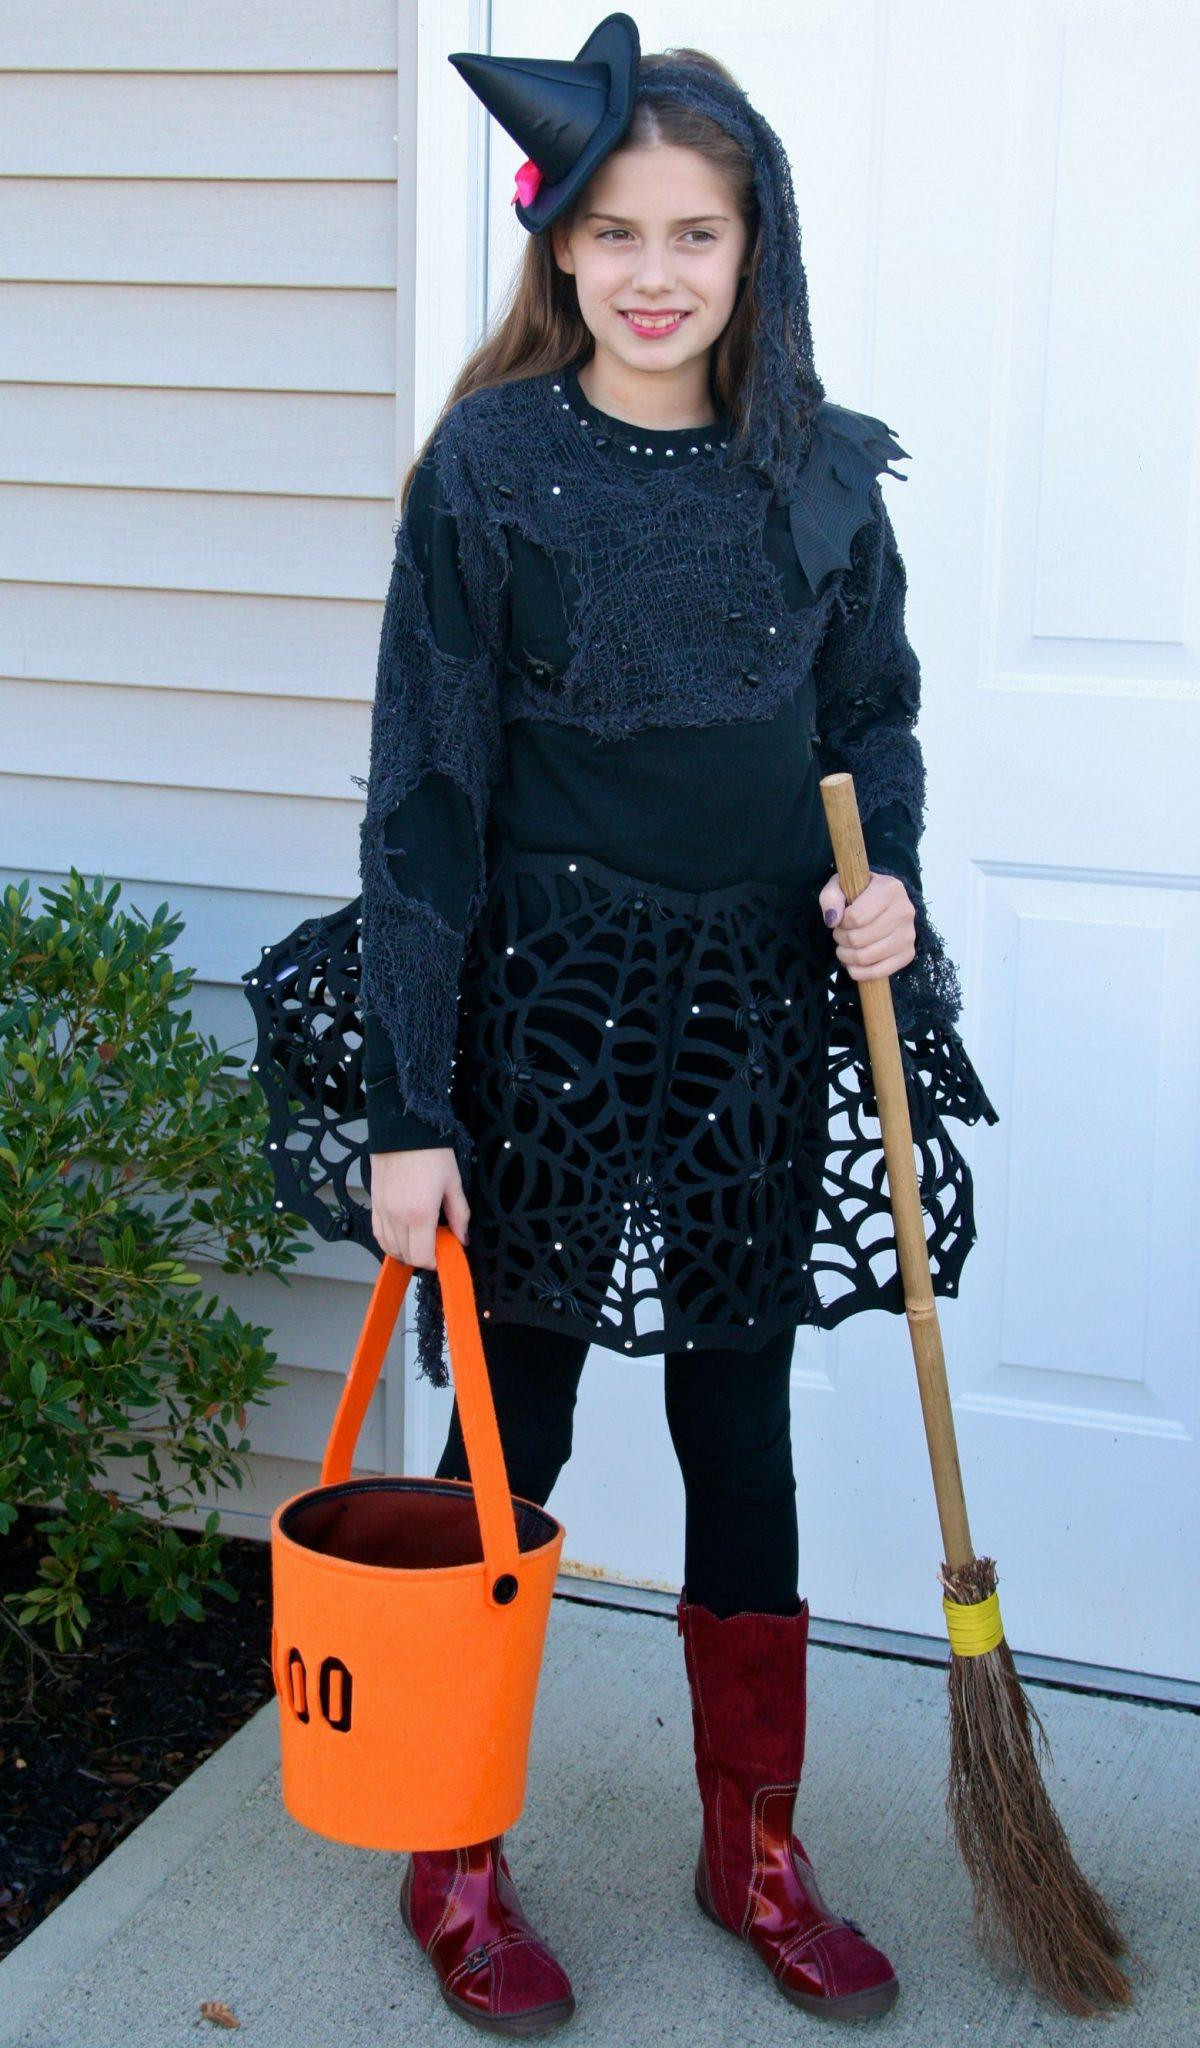 Girl DIY Halloween Costumes
 DIY Trendy Witch Costume for Tween Teen Girls